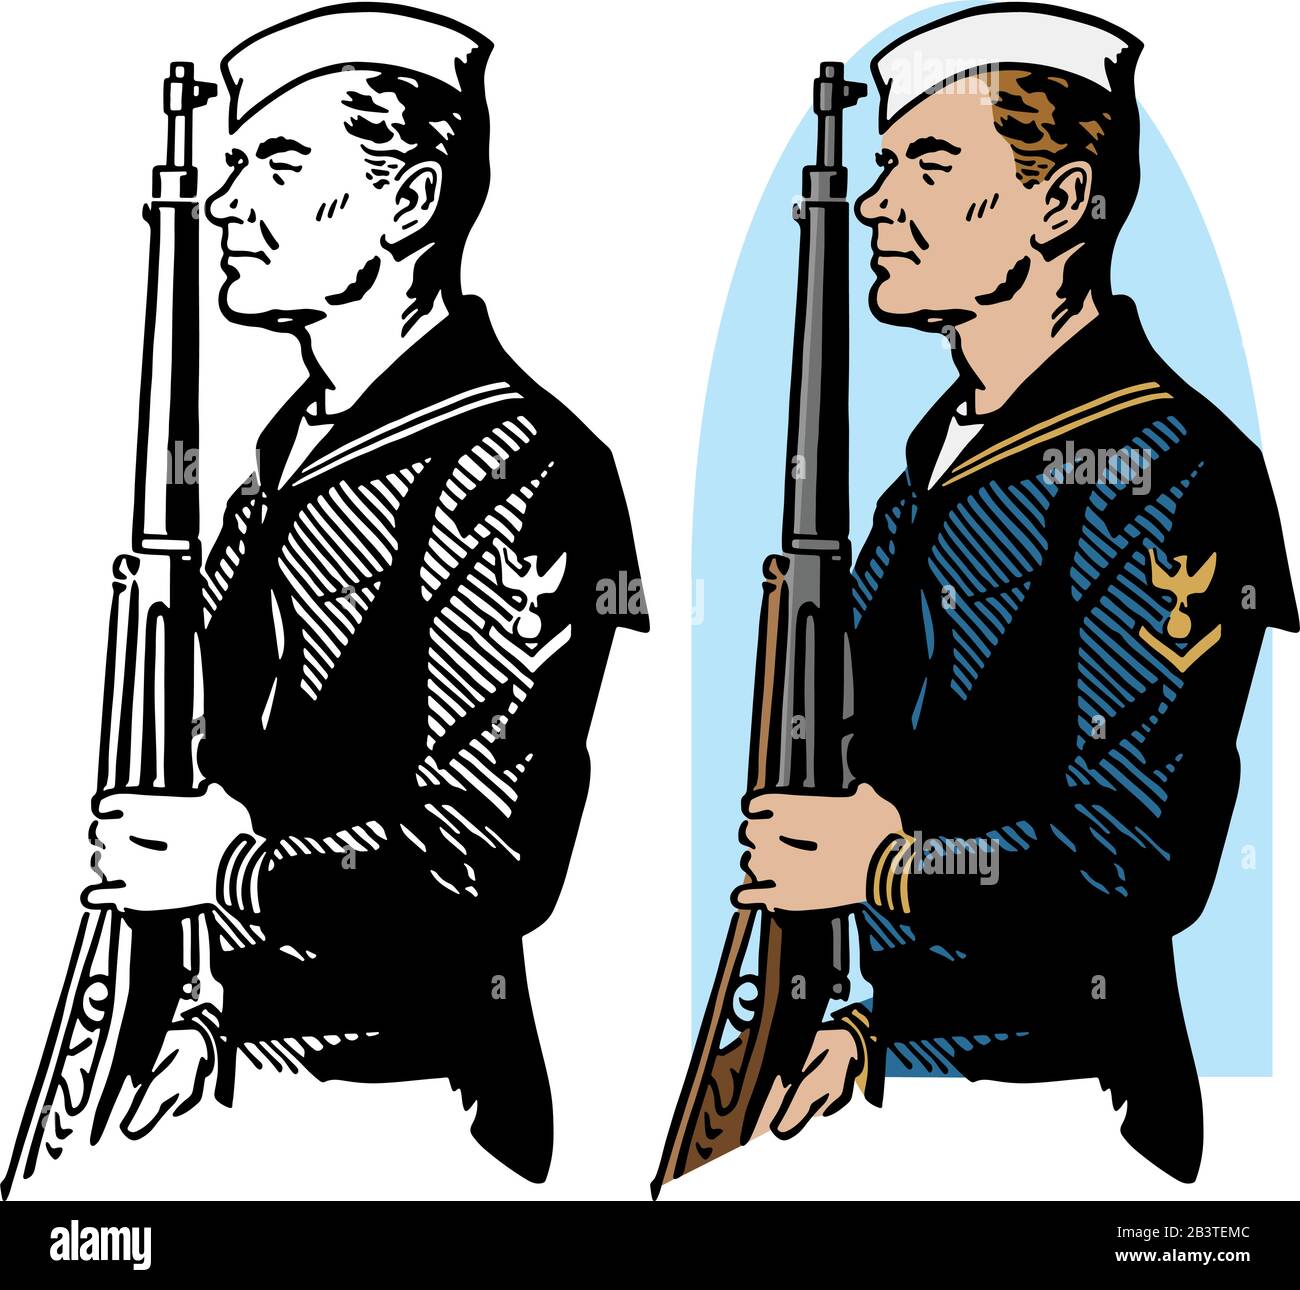 Eine Zeichnung eines Soldaten der Marine aus der Zeit des zweiten Weltkriegs, der beim halten eines Gewehrs auf sich aufmerksam gemacht wurde. Stock Vektor